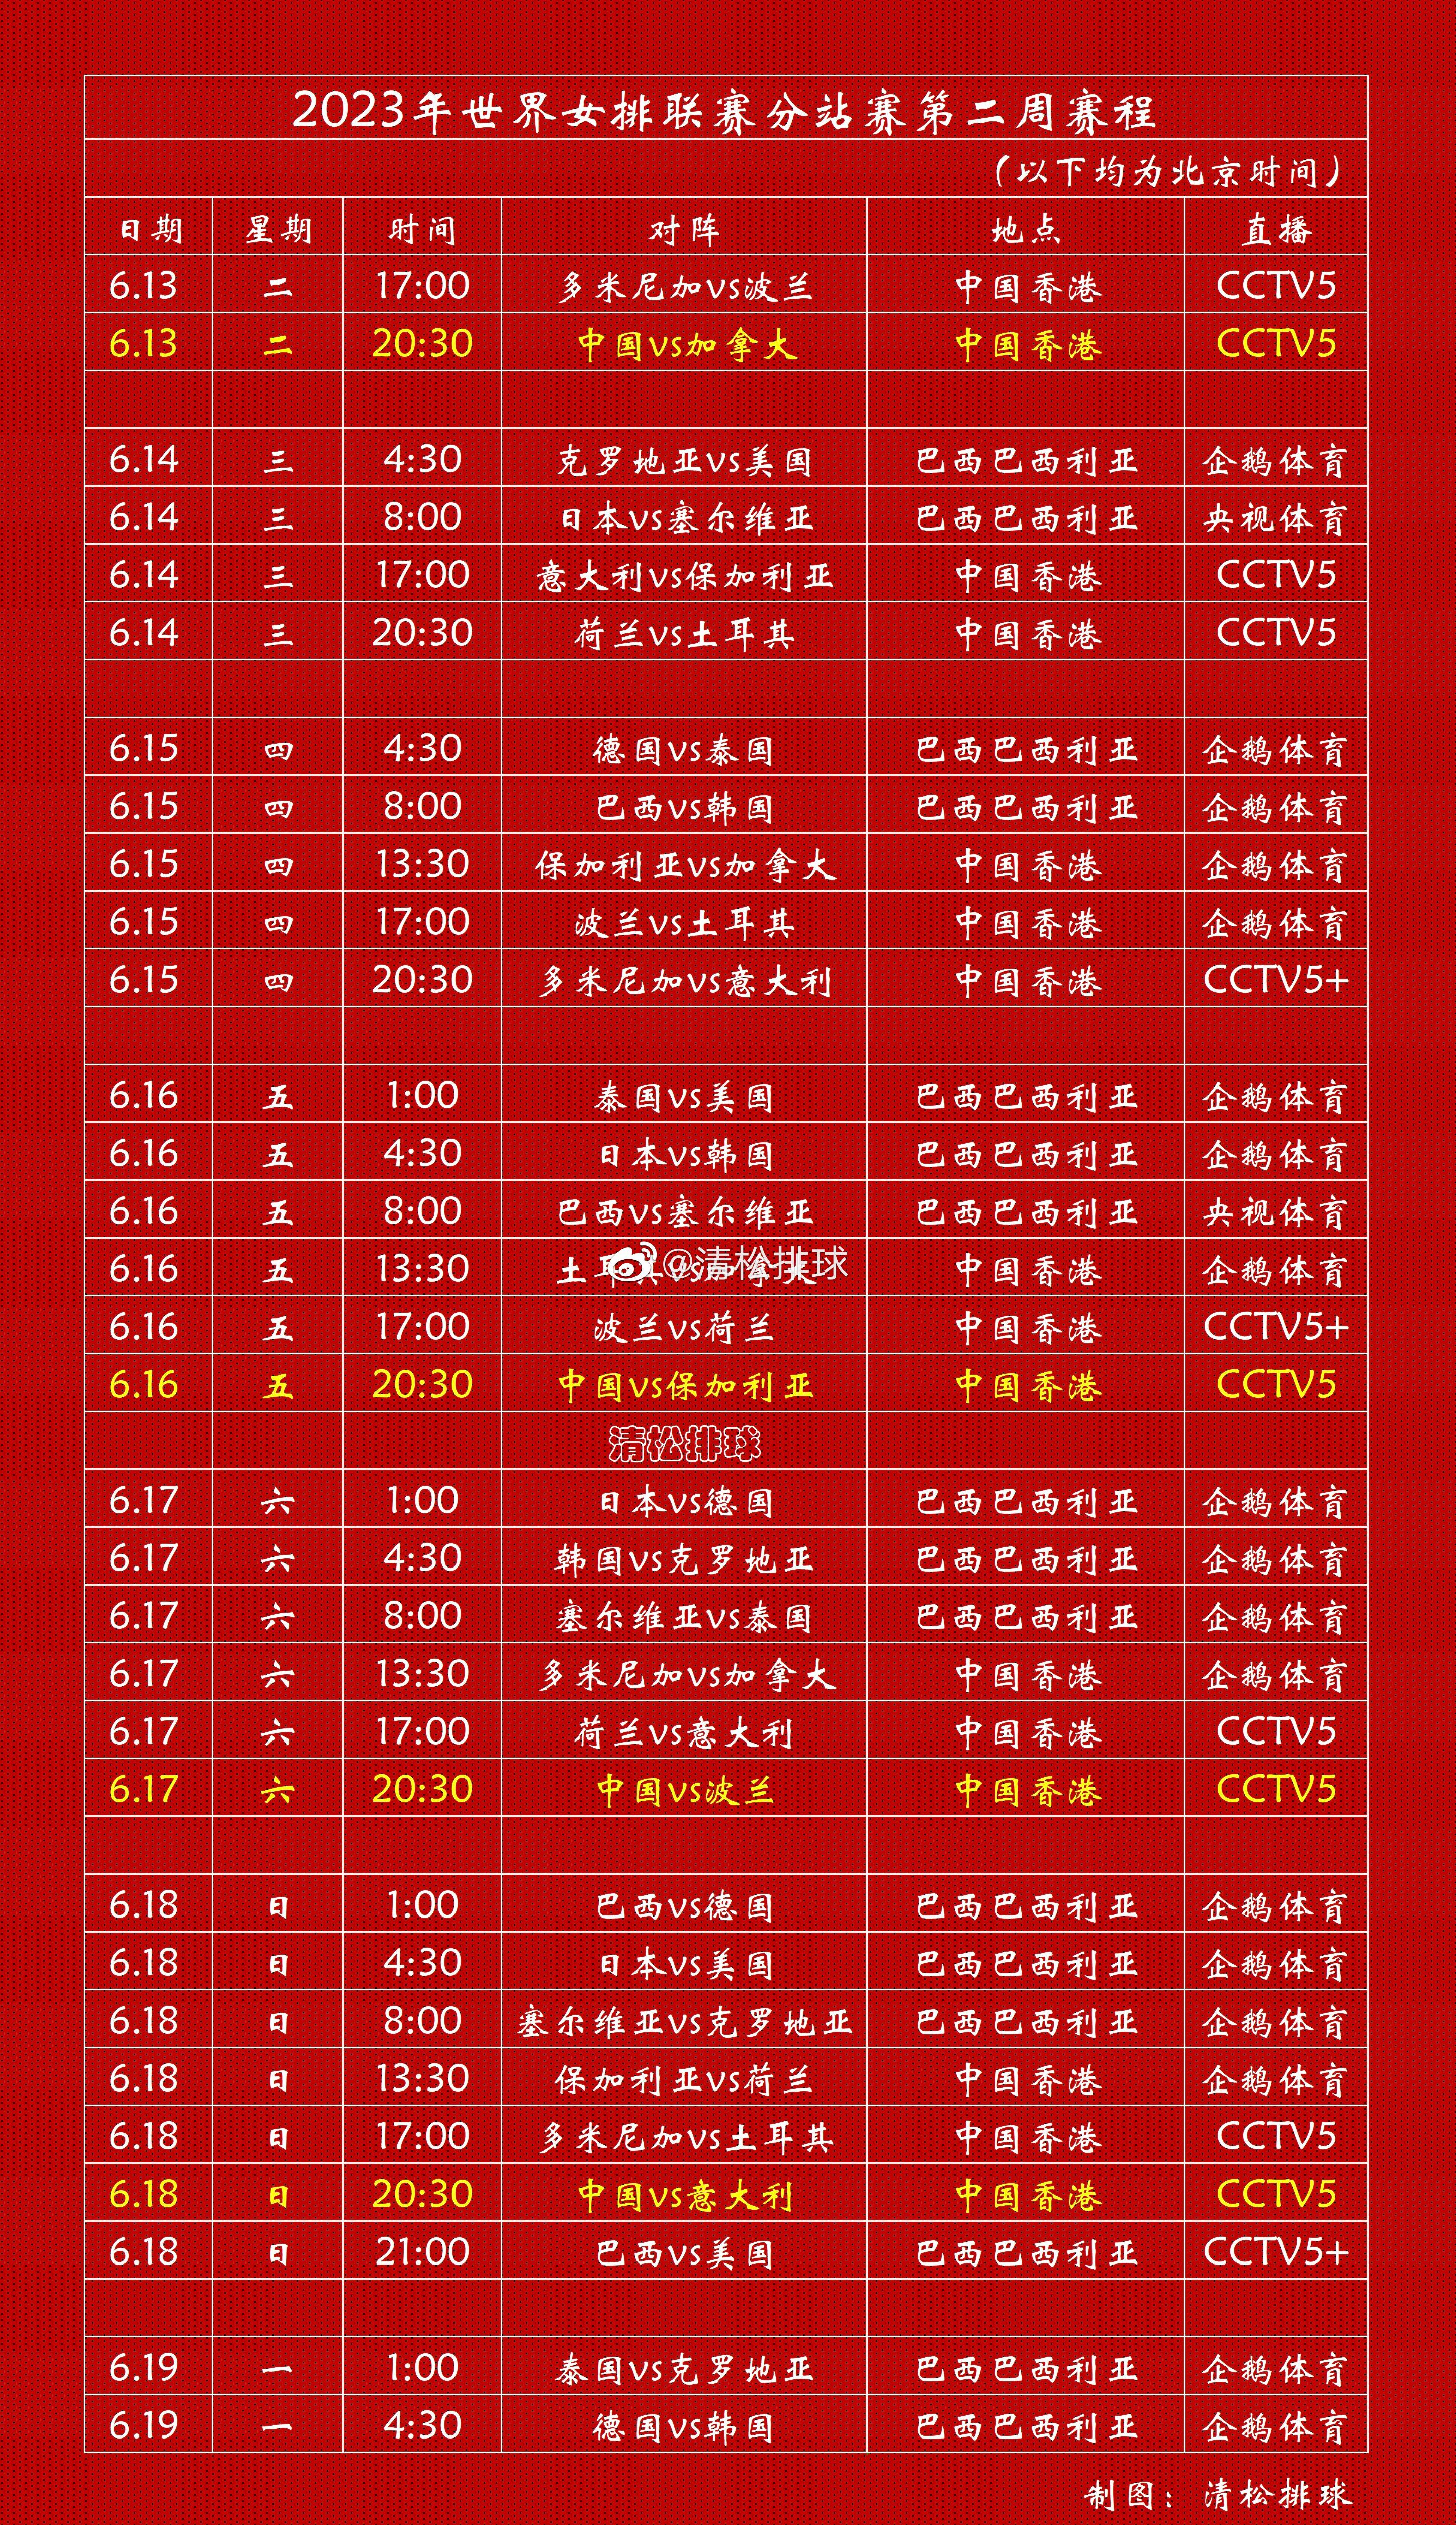 【赛程表】2023年世界女排联赛第二周中国香港站、巴西巴西利亚站完整赛程中国女排